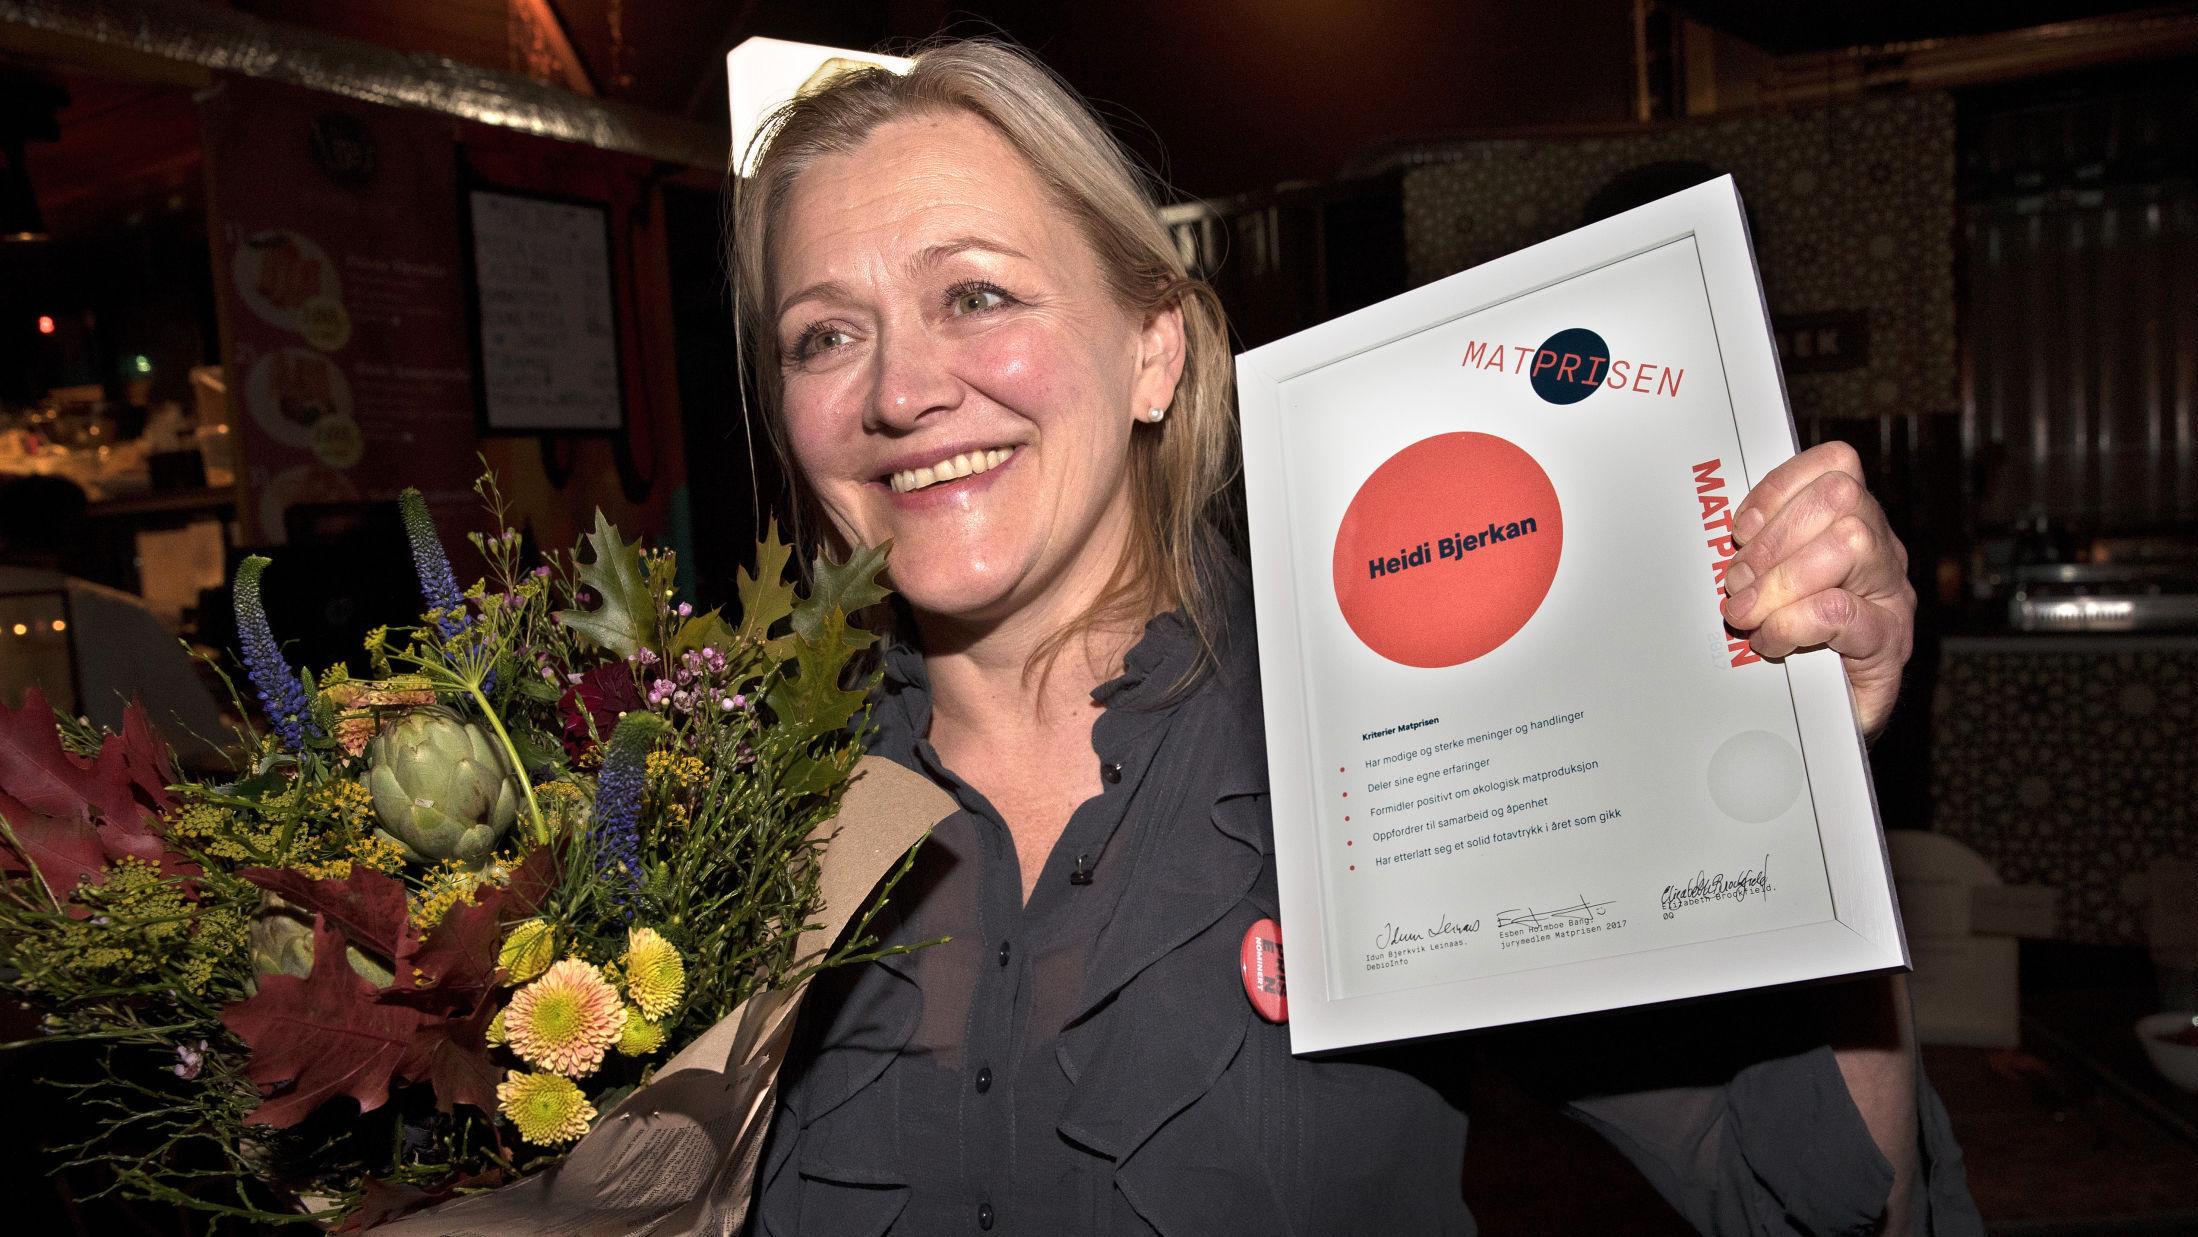 ET FORBILDE: Fantastisk!, sier Heidi Bjerkan til Godt. Hun har etterlatt seg et solid fotavtrykk i året som gikk, ifølge juryen. Foto: Hallgeir Vågenes / VG